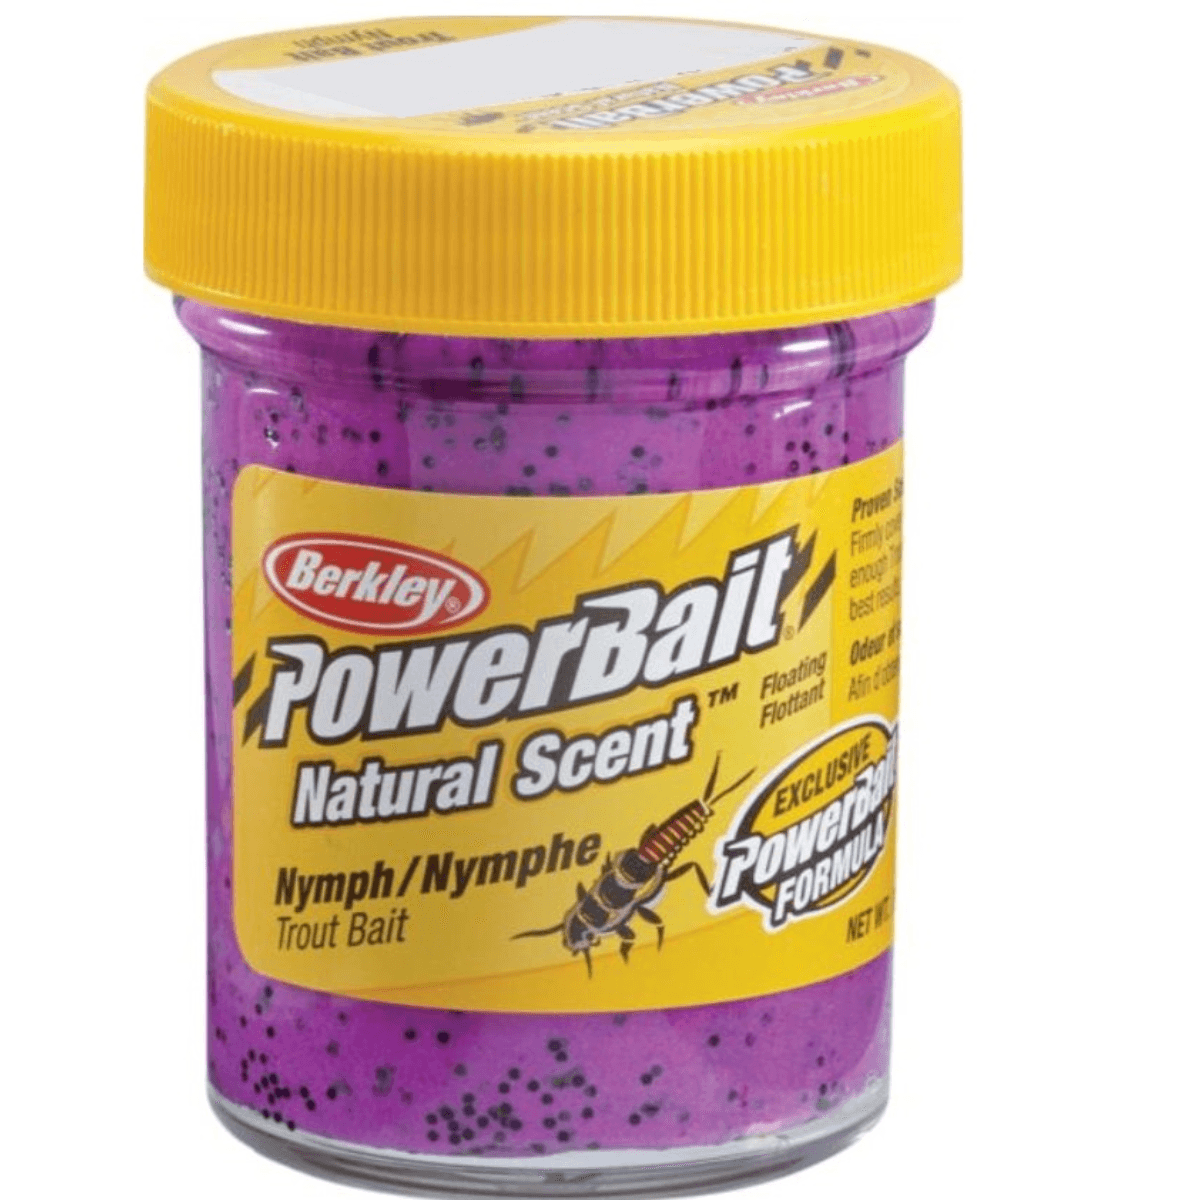 Berkley PowerBait Natural Scent Trout Bait - Nymph